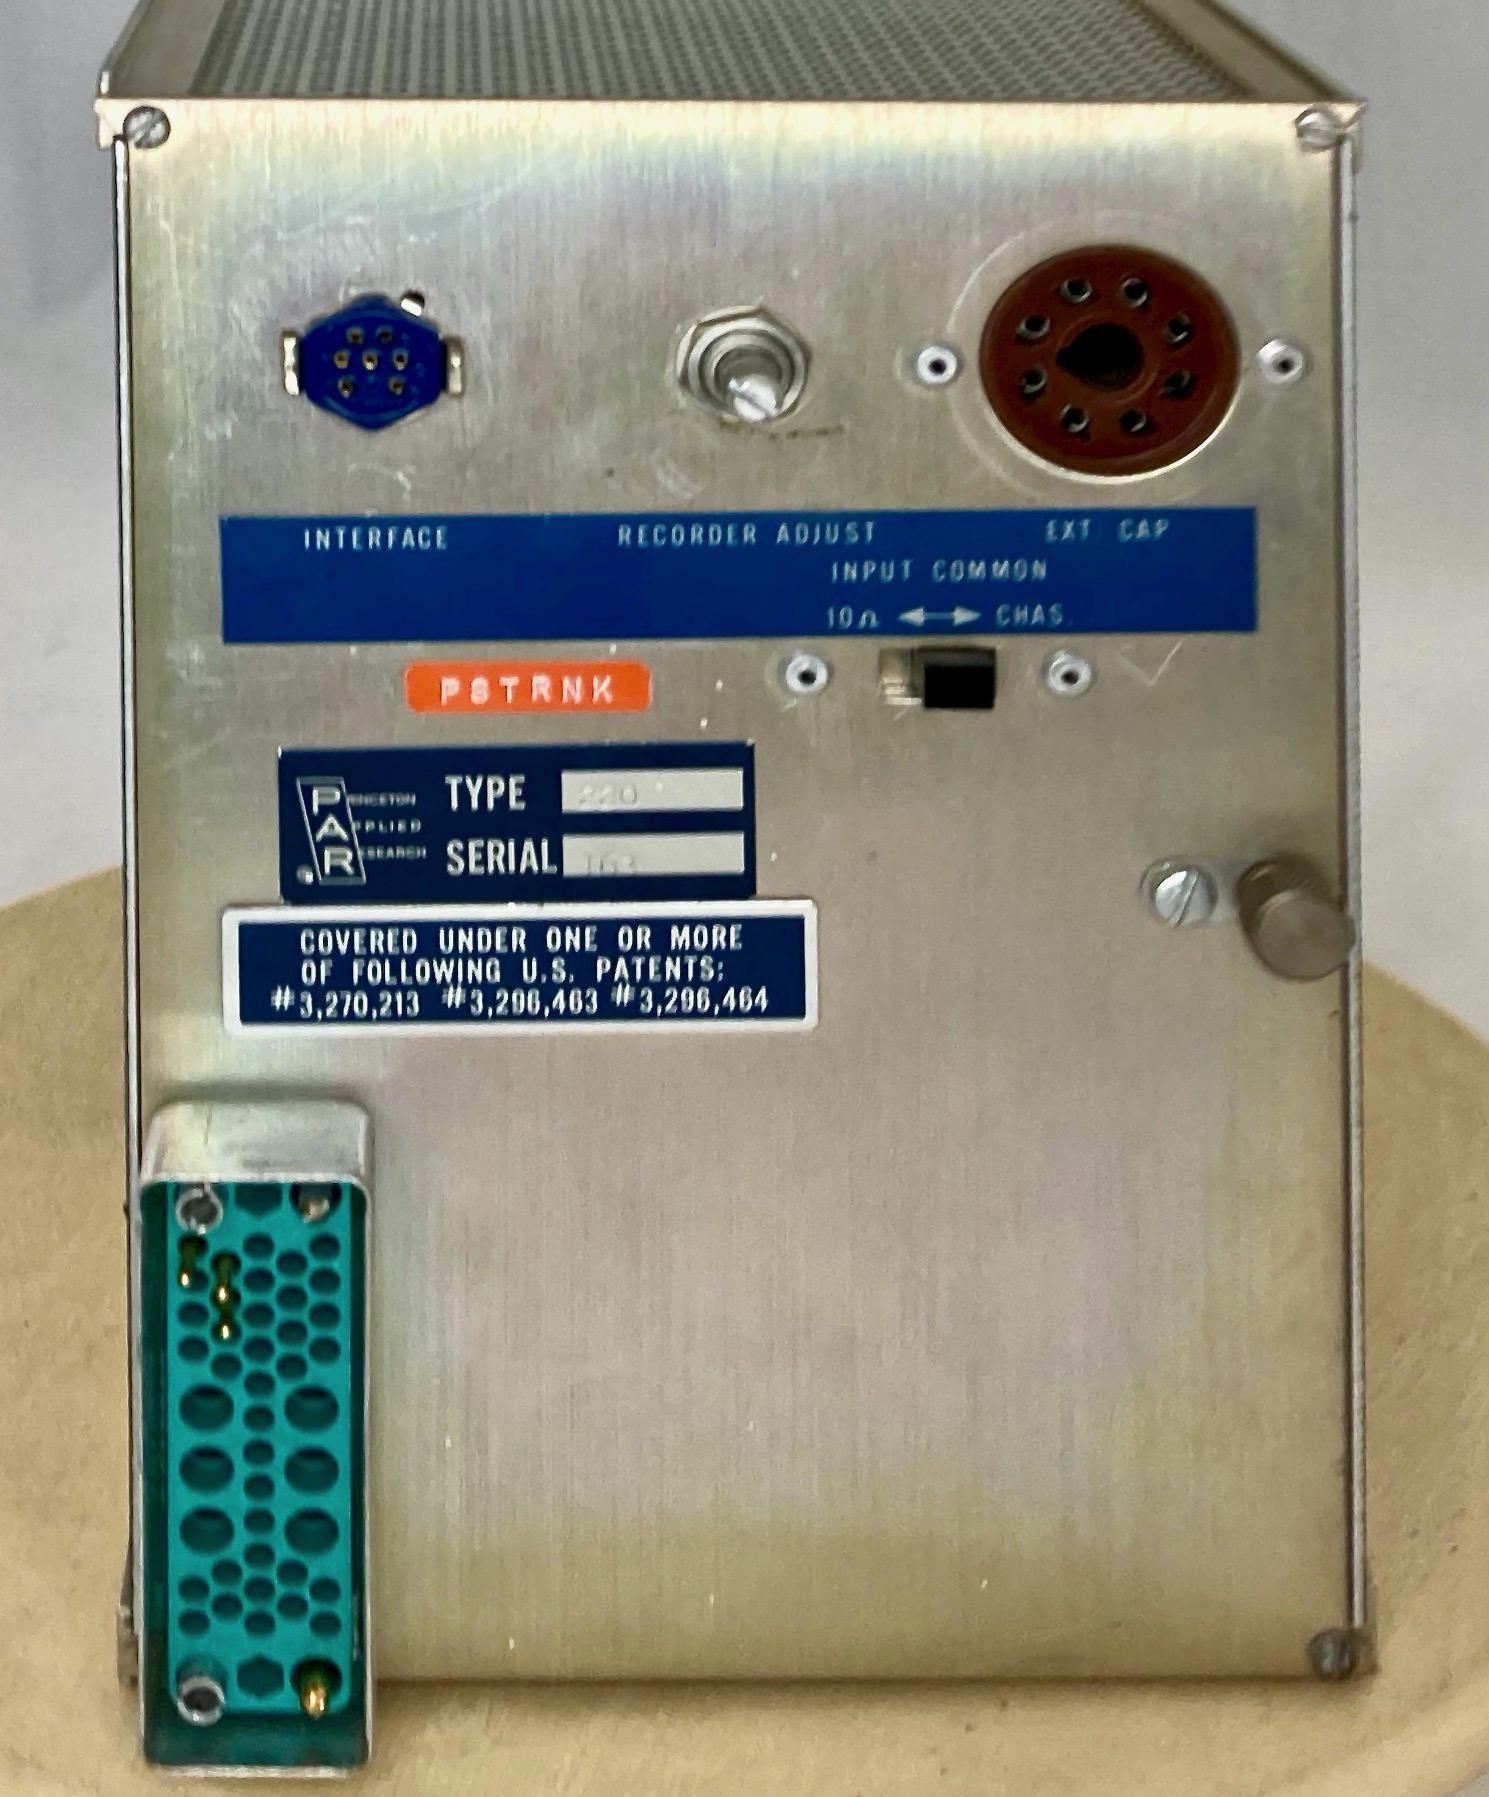 Amplificateur à détection synchrone
(“Lock-In Amplifier”)